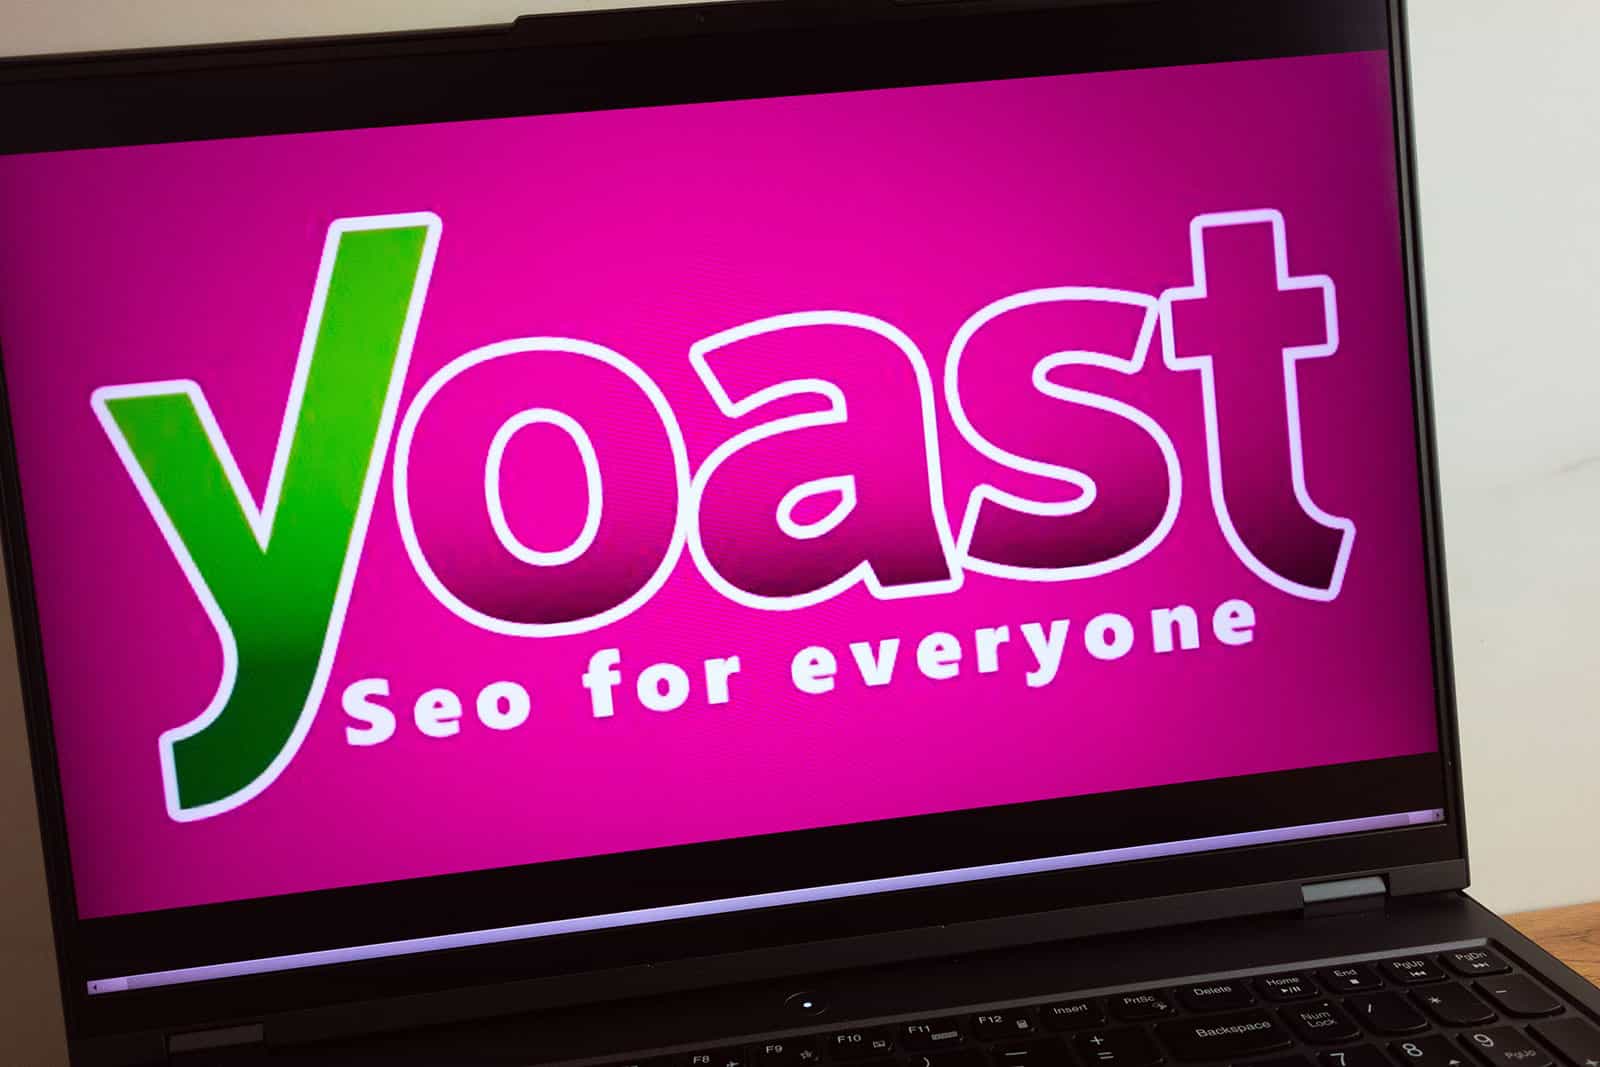 Yoast WordPress Plugin